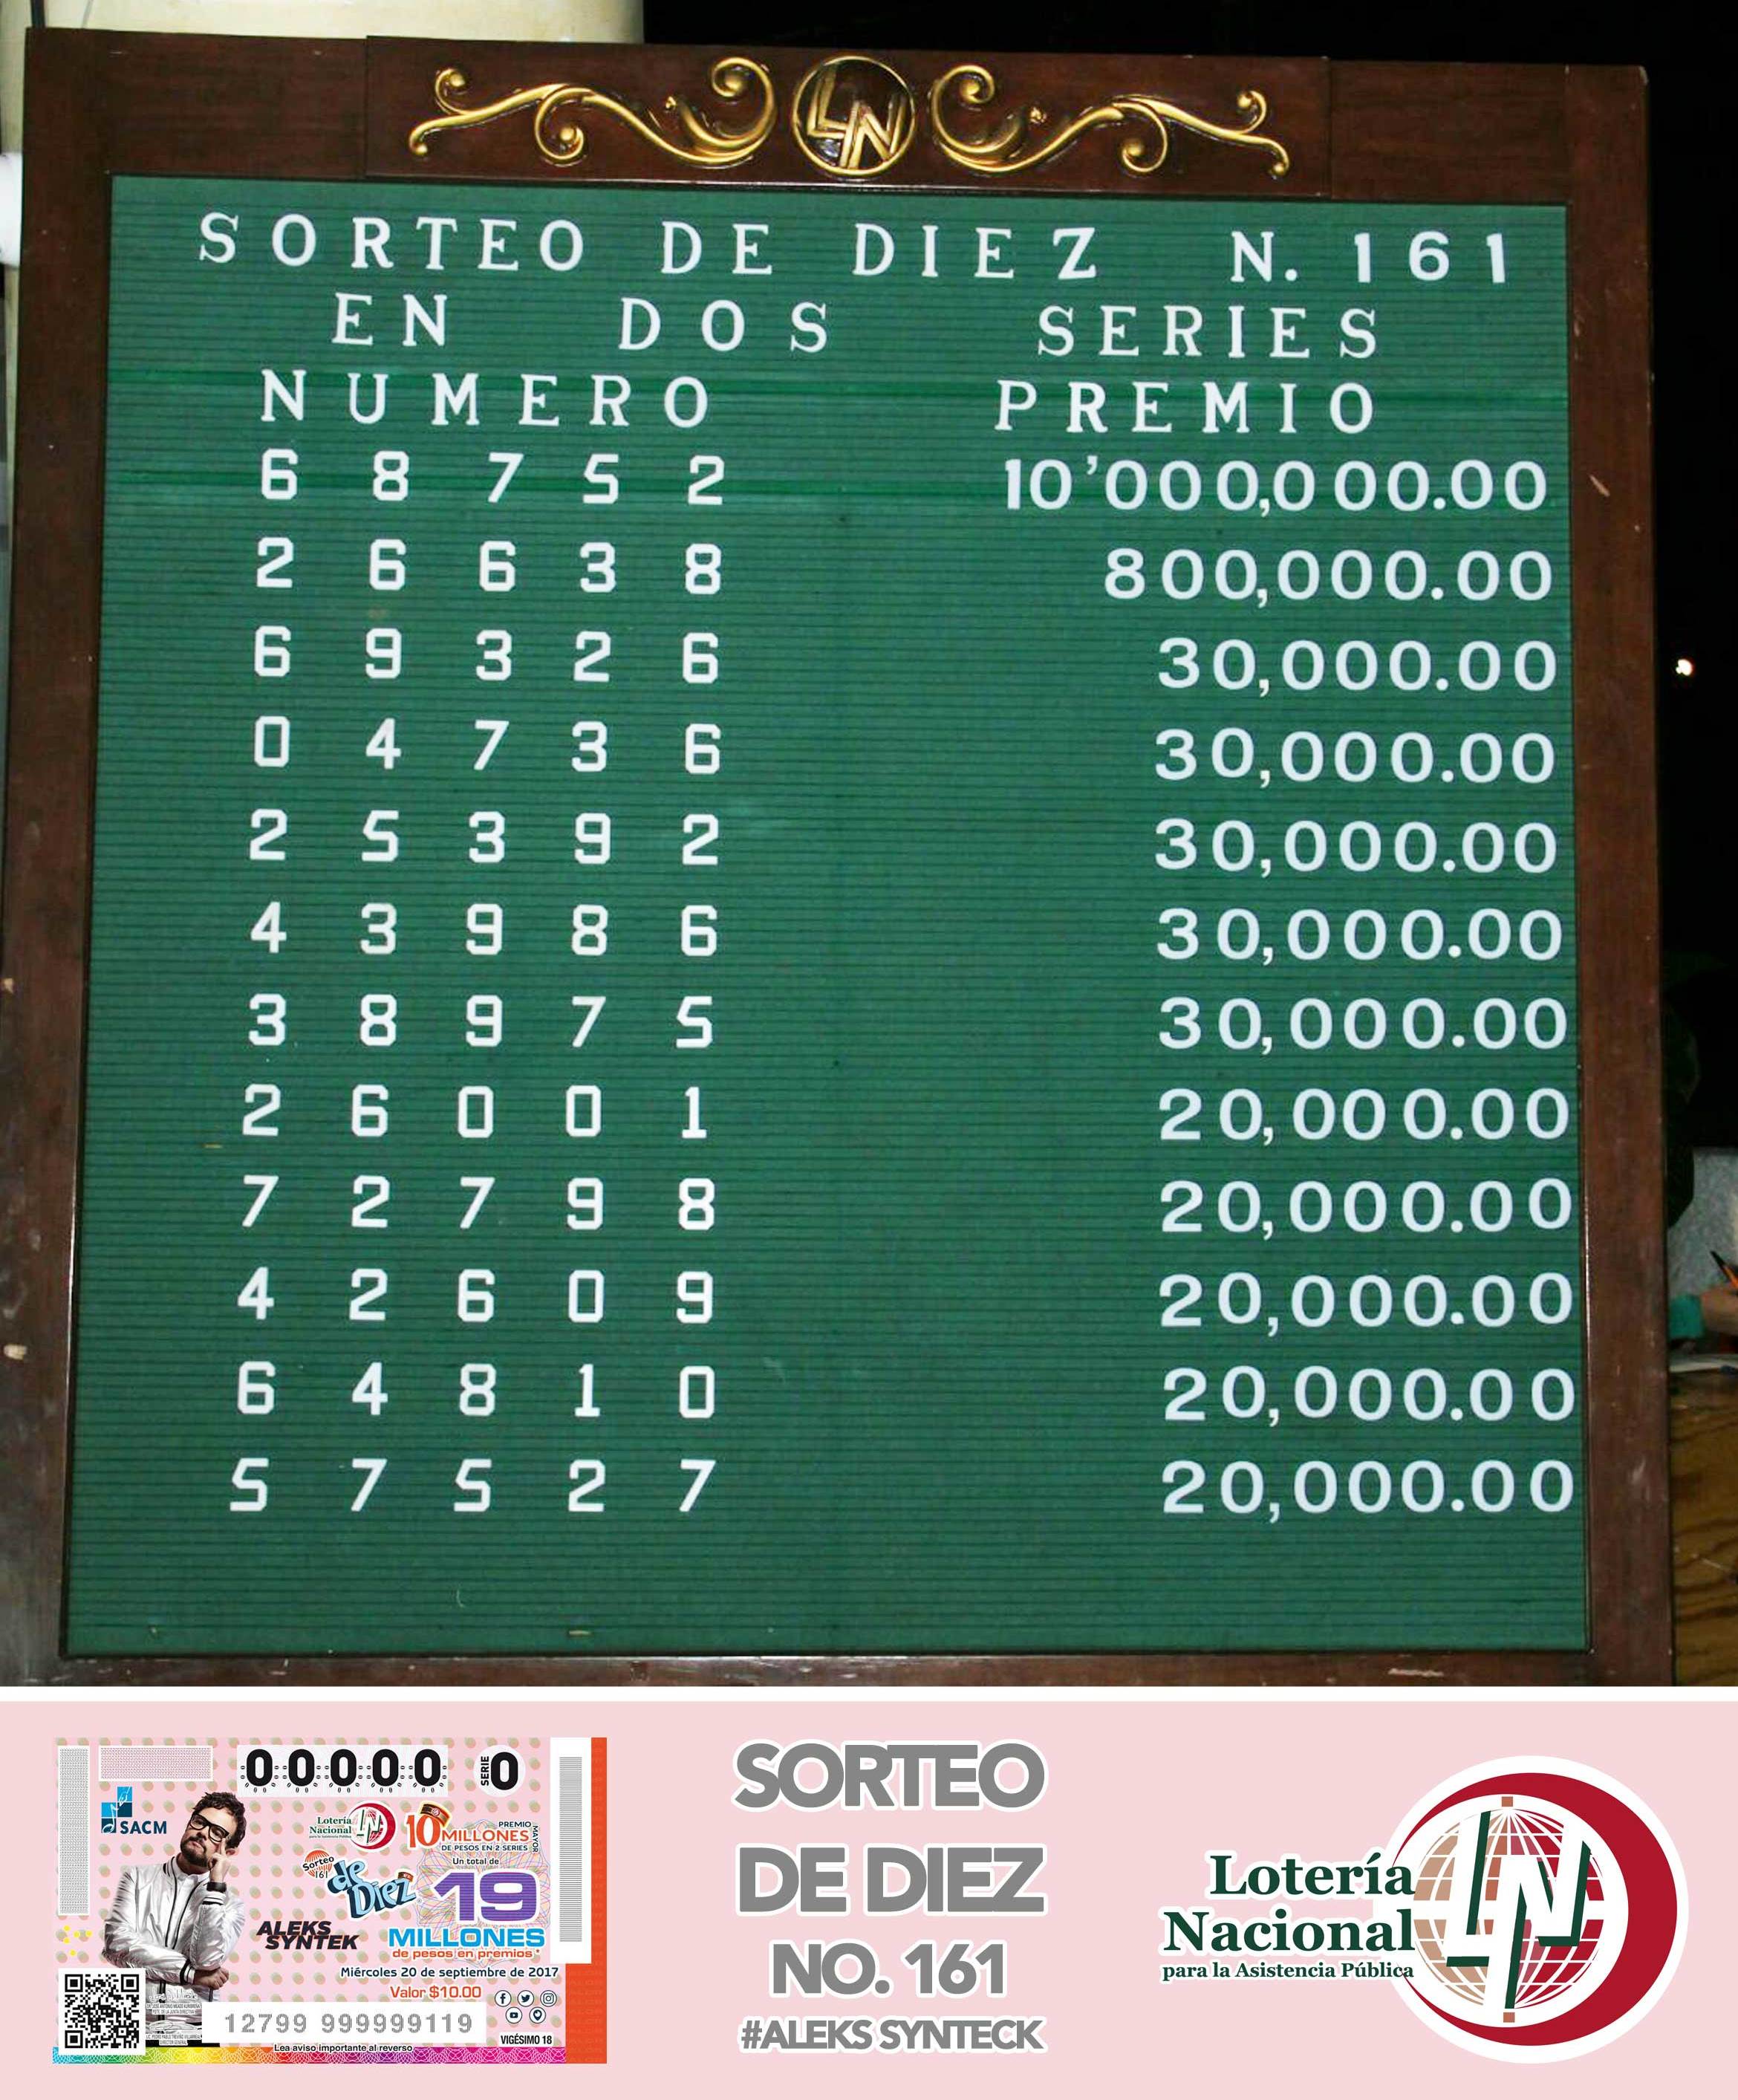 RESULTADOS SORTEO DE DIEZ No. 161 Lotería Nacional para la Asistencia